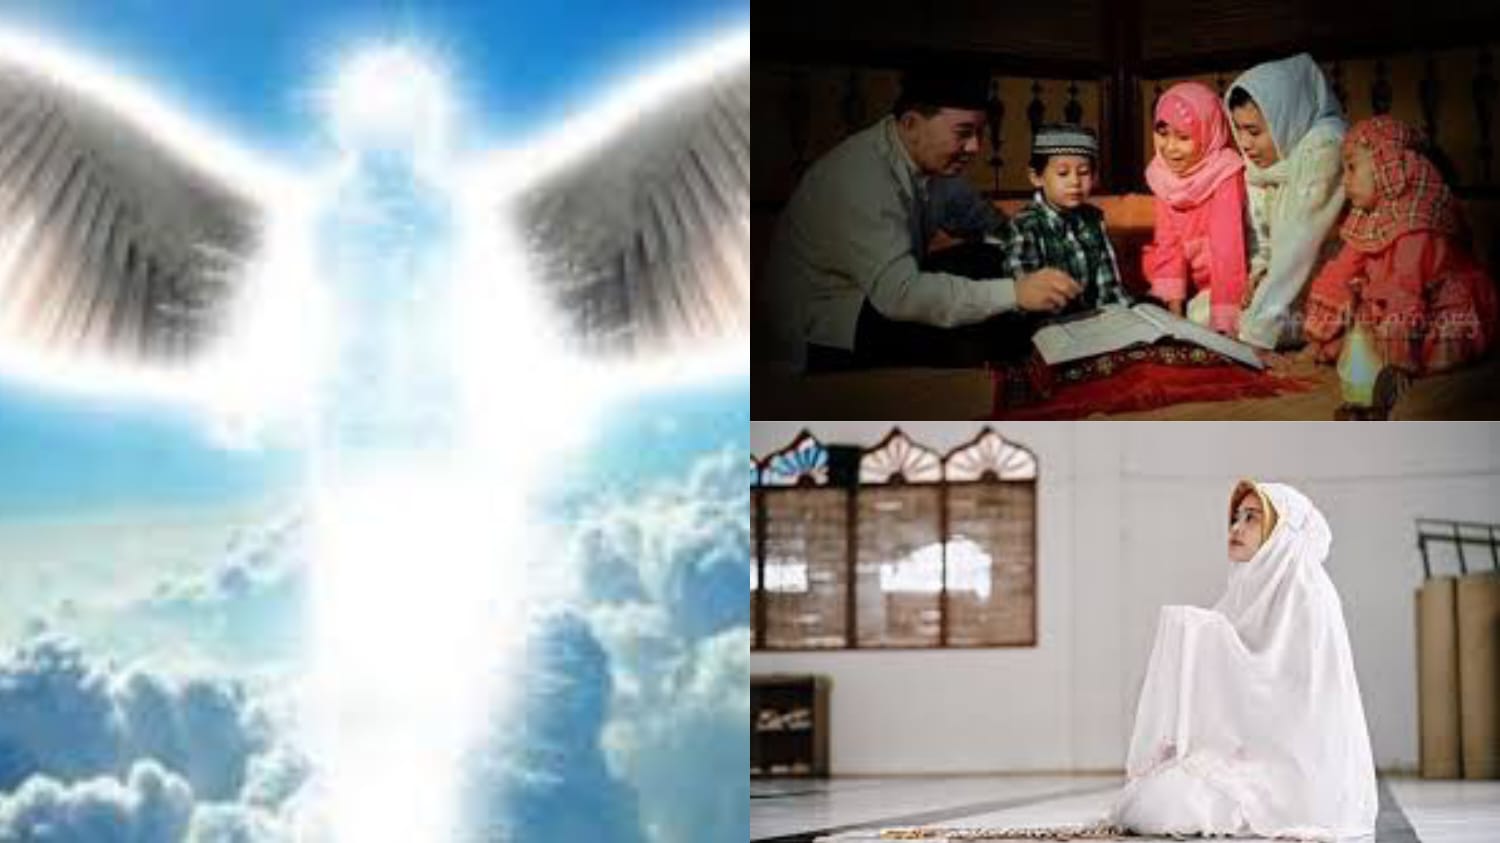 5 Amalan yang Bisa Mengundang Malaikat Datang Kerumah, Sangat Mudah Tapi tak Banyak yang Mengamalkannya